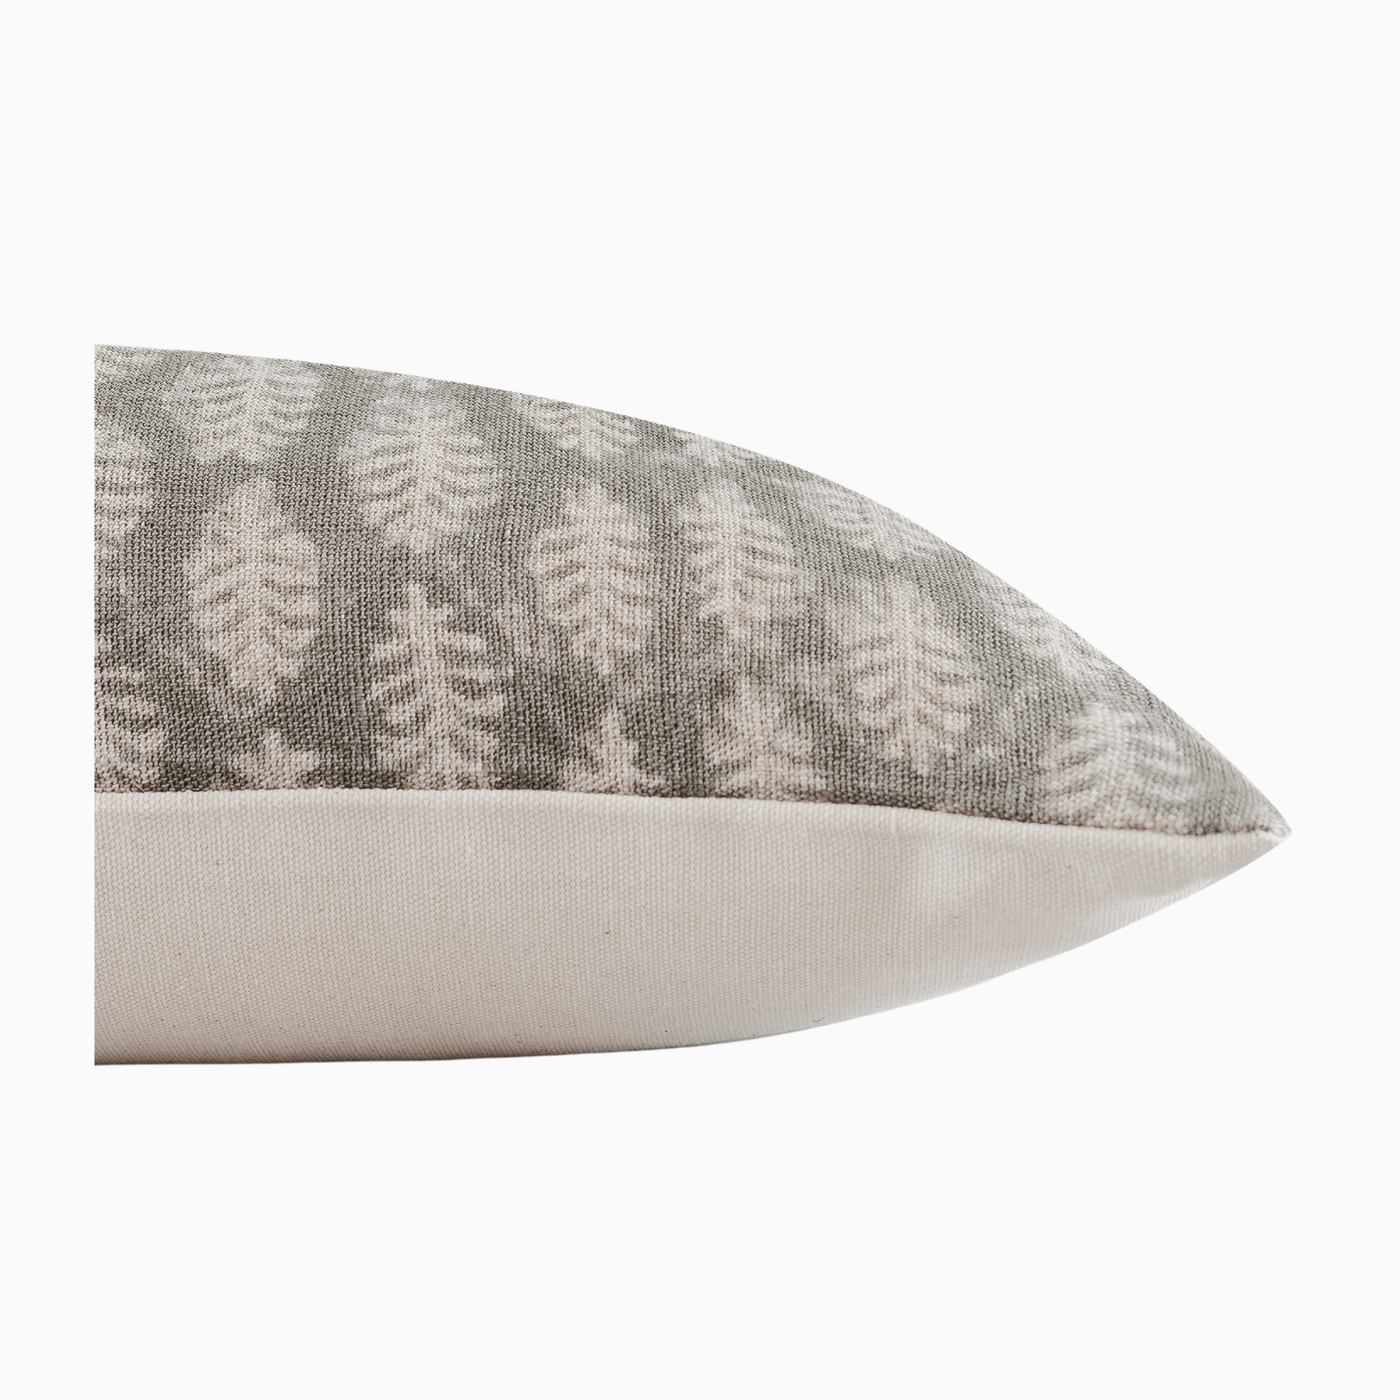 KUNLE - Indian Hand Block Linen Lumbar Pillow Cover - Sweet Water Decor - Pillow Cover